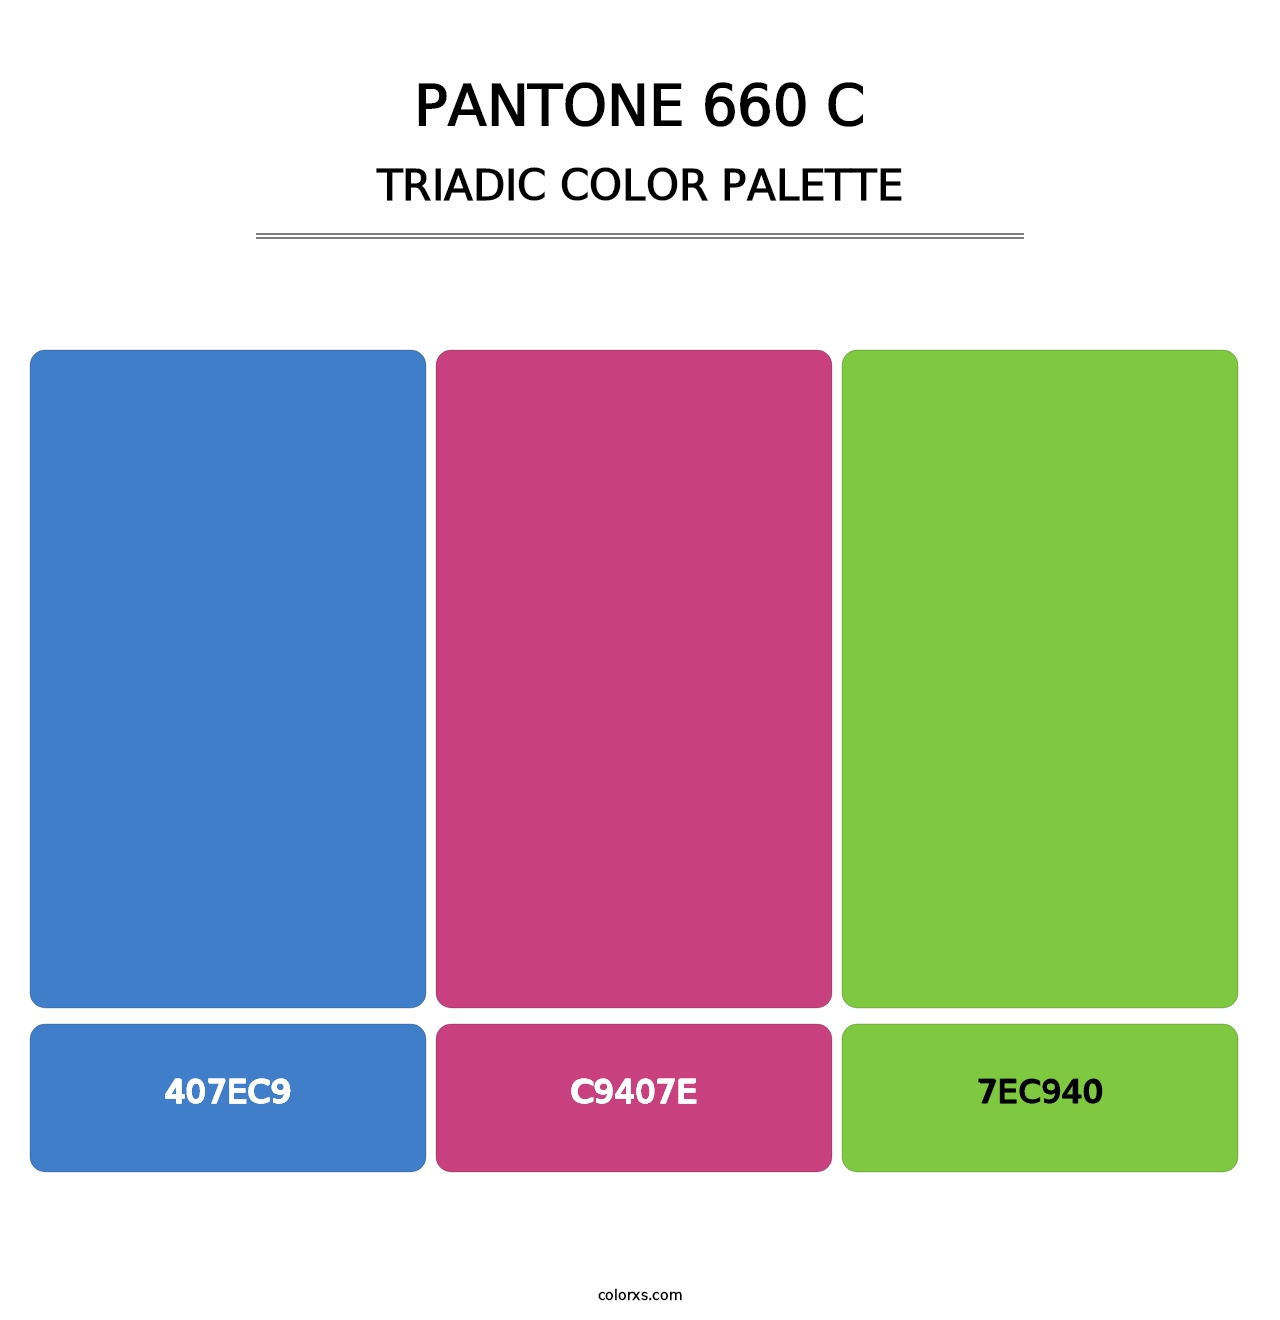 PANTONE 660 C - Triadic Color Palette